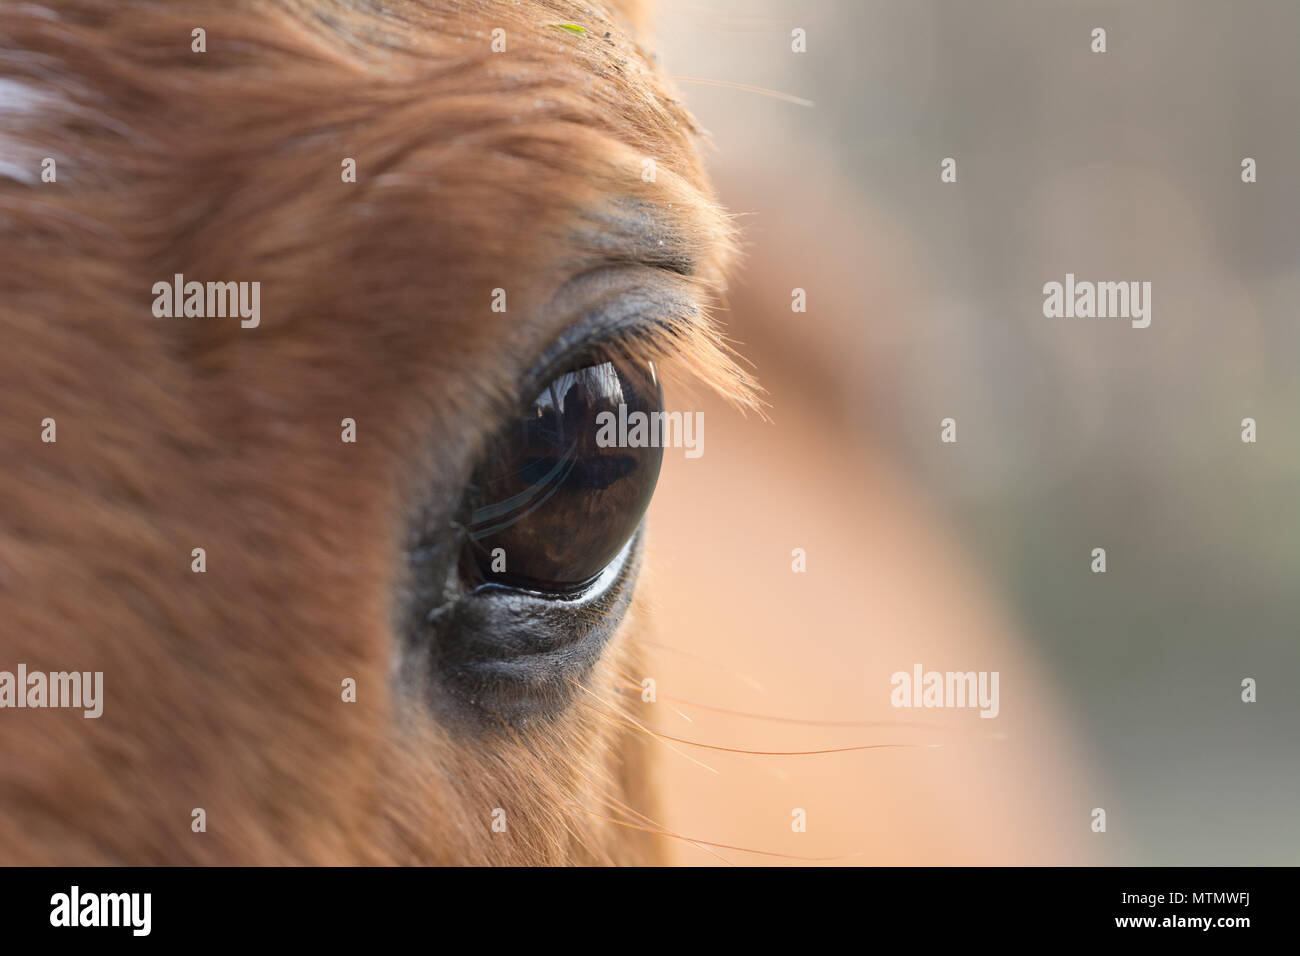 Cose-up eye horse / pony with eyelashes. Stock Photo